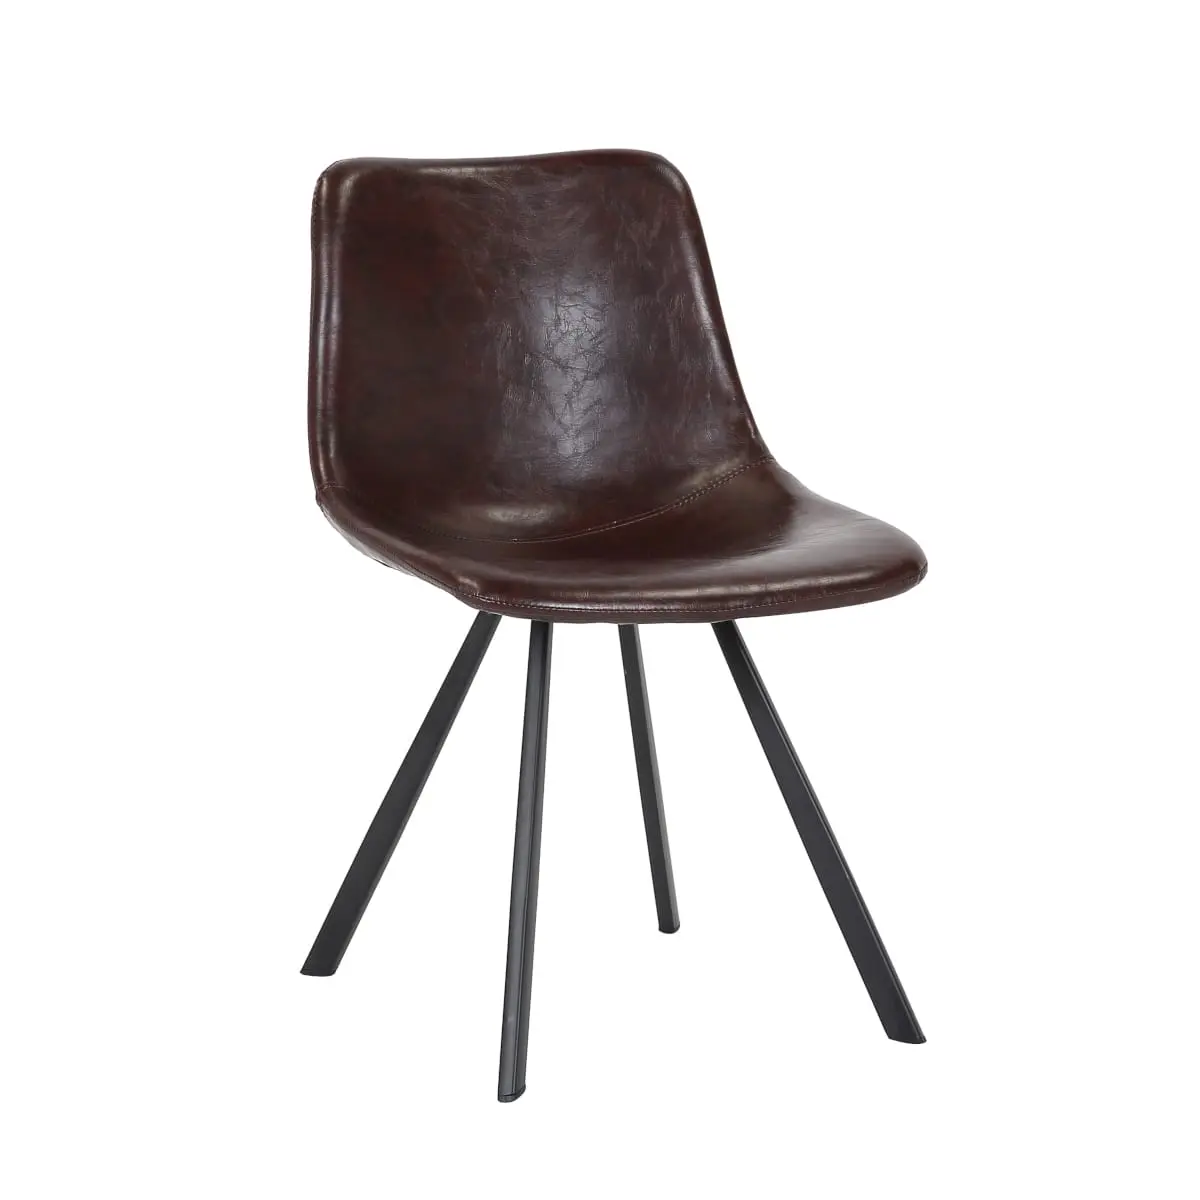 Stuhl für Esstisch, dunkel braun, retro industrial Design, Metallgestell schwarz